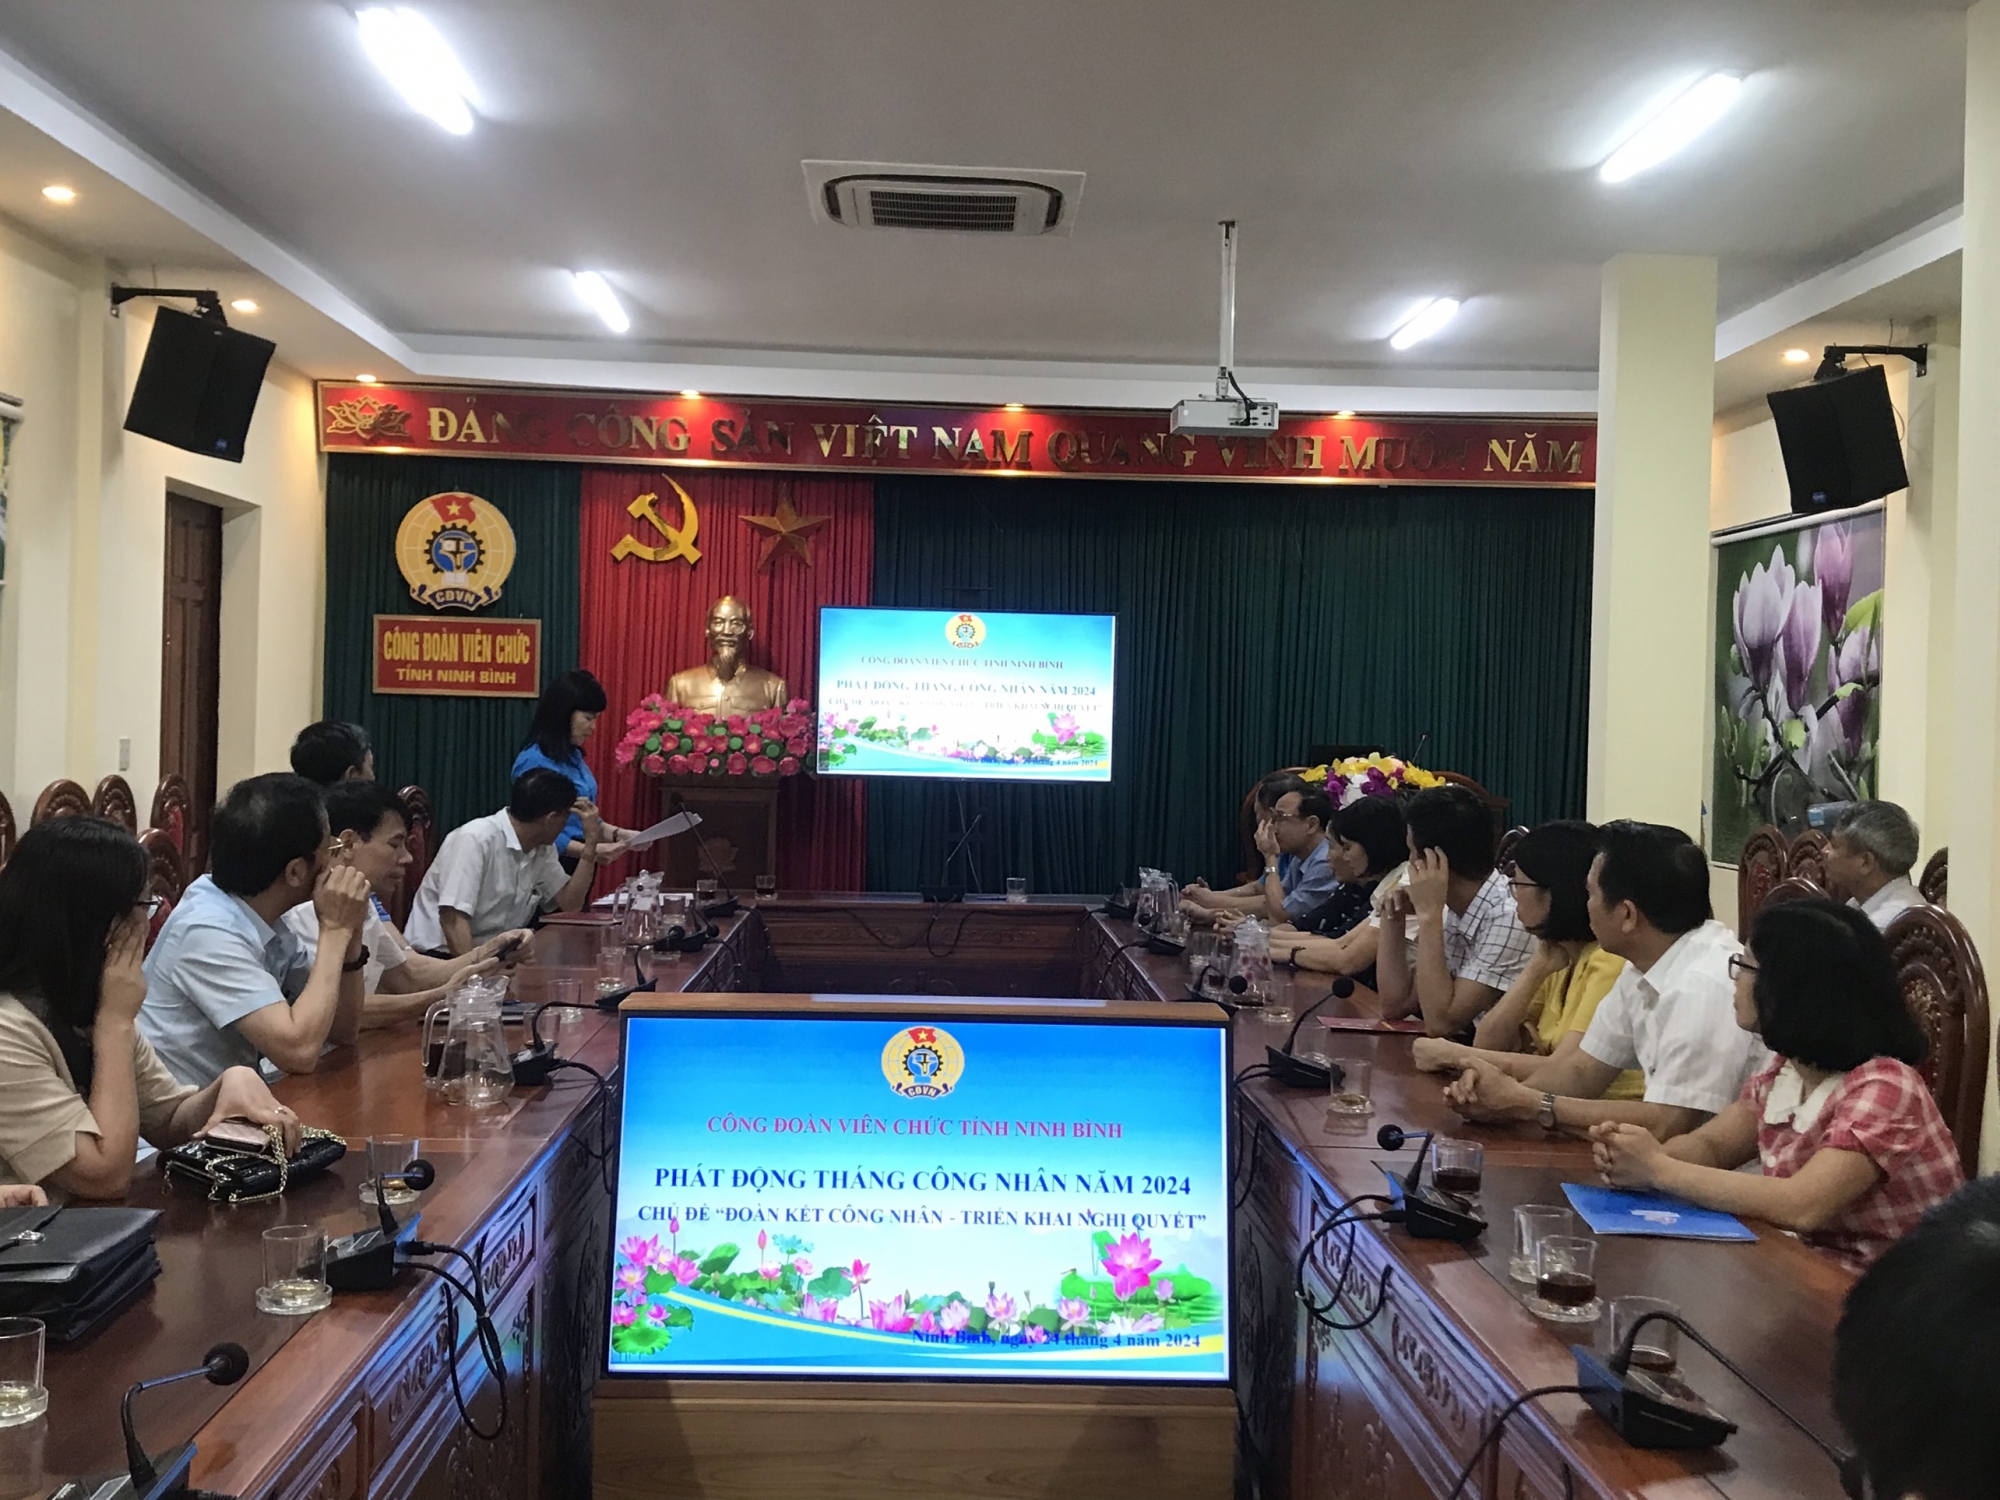 Công đoàn Viên chức tỉnh Ninh Bình Tổ chức Phát động Tháng công nhân năm 2024 và ký kết Chương trình phối hợp công tác với Sở Nội vụ tỉnh